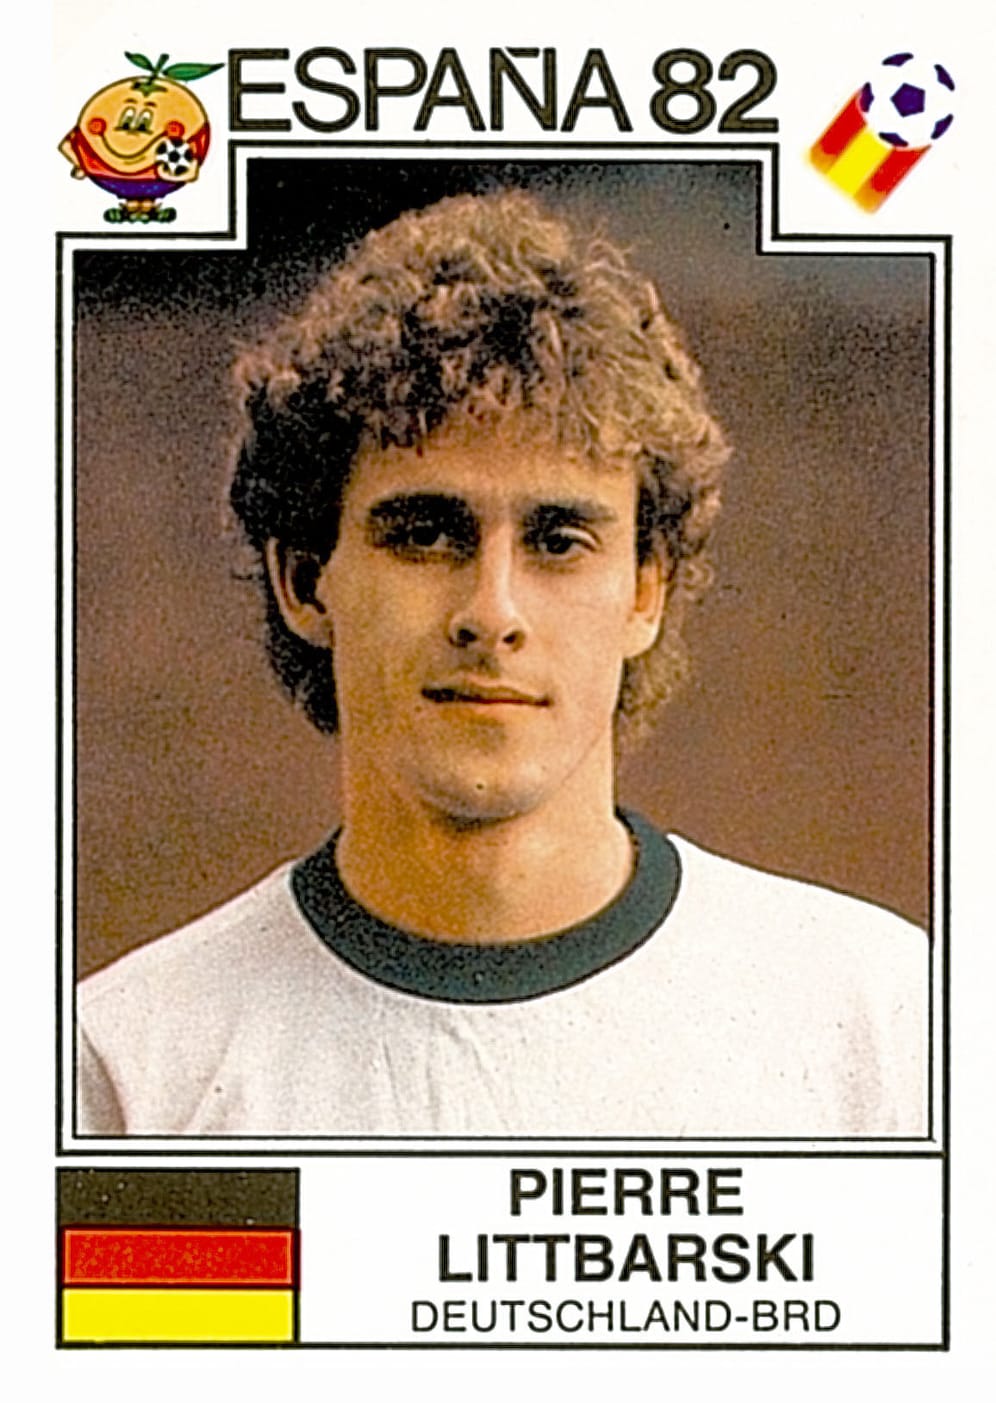 Im Gegensatz zu seinen Kollegen hatte er bereits 1982 das Posieren für die Kamera drauf: Pierre "Litti" Littbarski leitet heute den Bereich "Spielerbeobachtung und Entwicklung" beim VFL Wolfsburg.